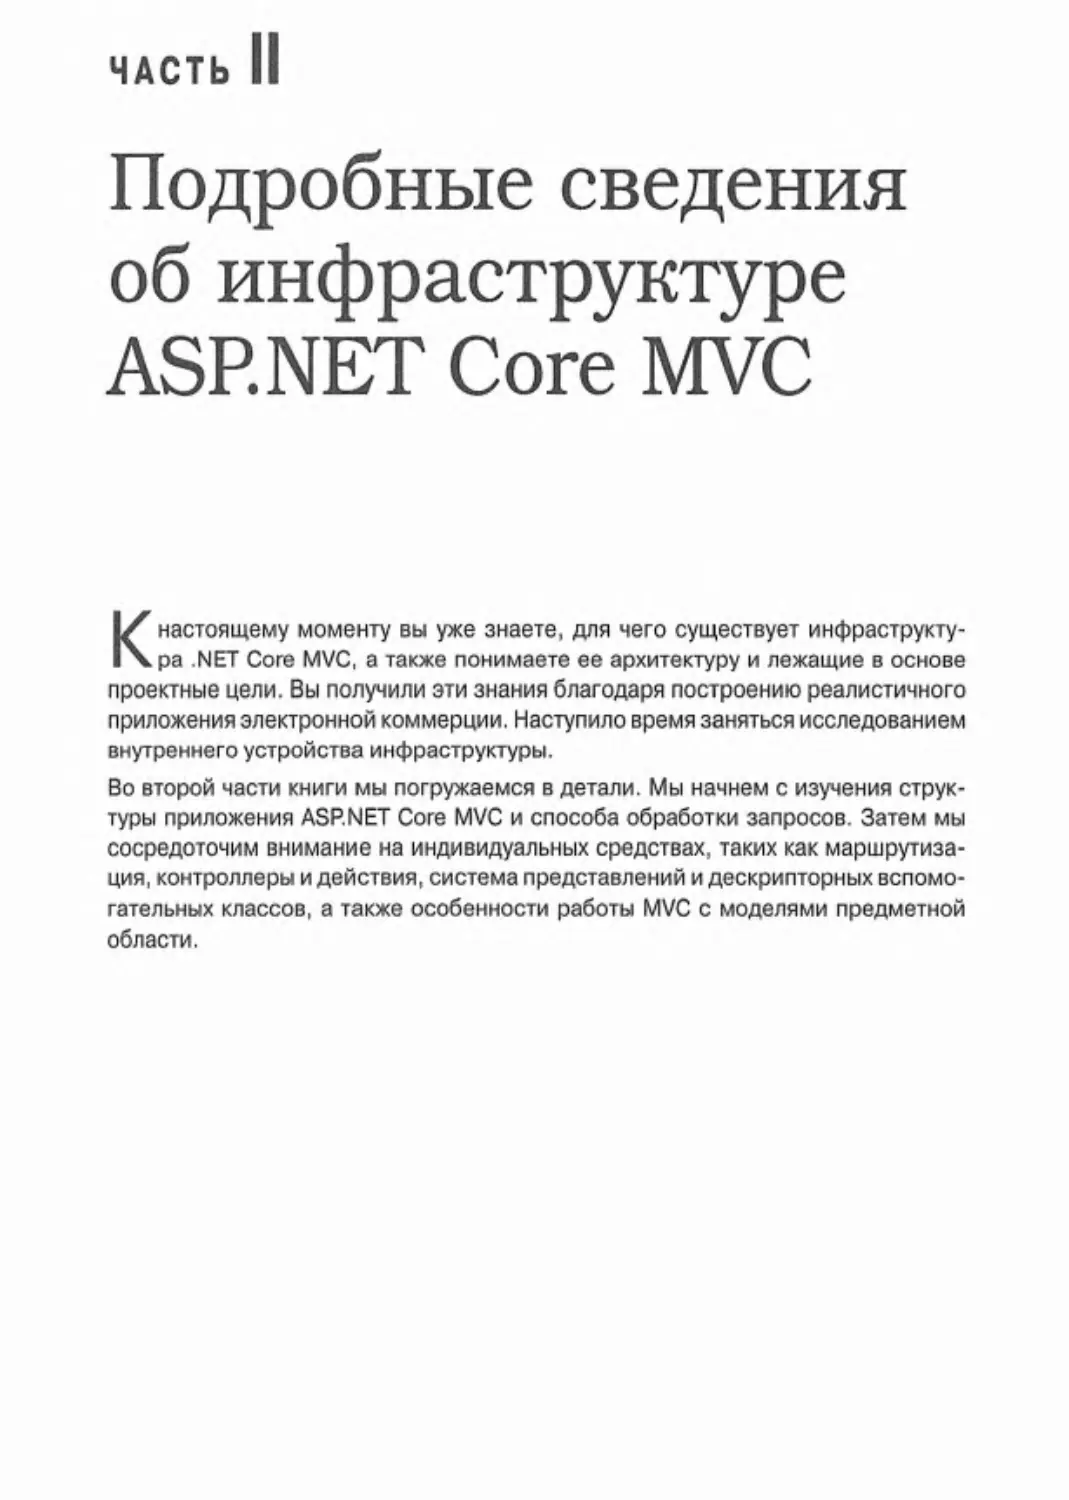 Часть II. Подробные сведения об инфраструктуре ASP.NET Core MVC